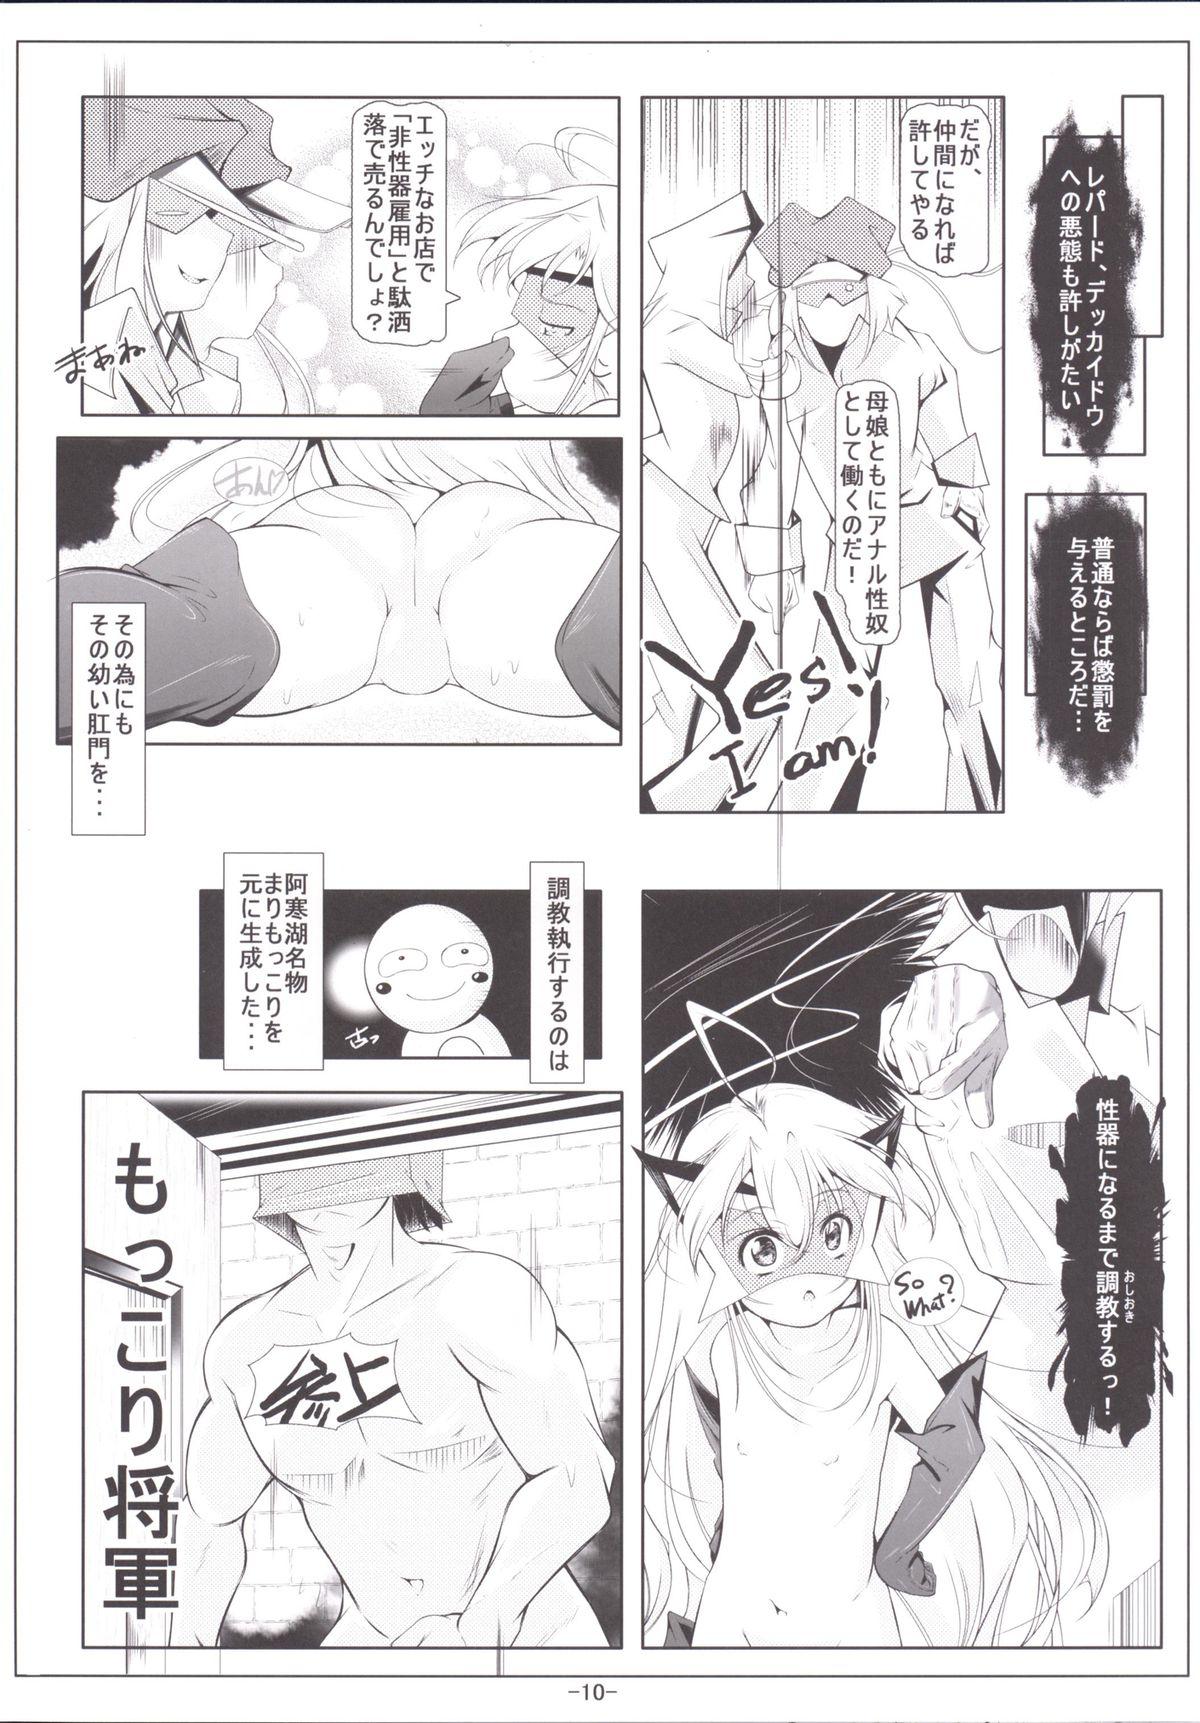 Sharing Leopard-chan Oshiri no Ana de Yoru no Oshigoto - Yoru no yatterman Pareja - Page 11